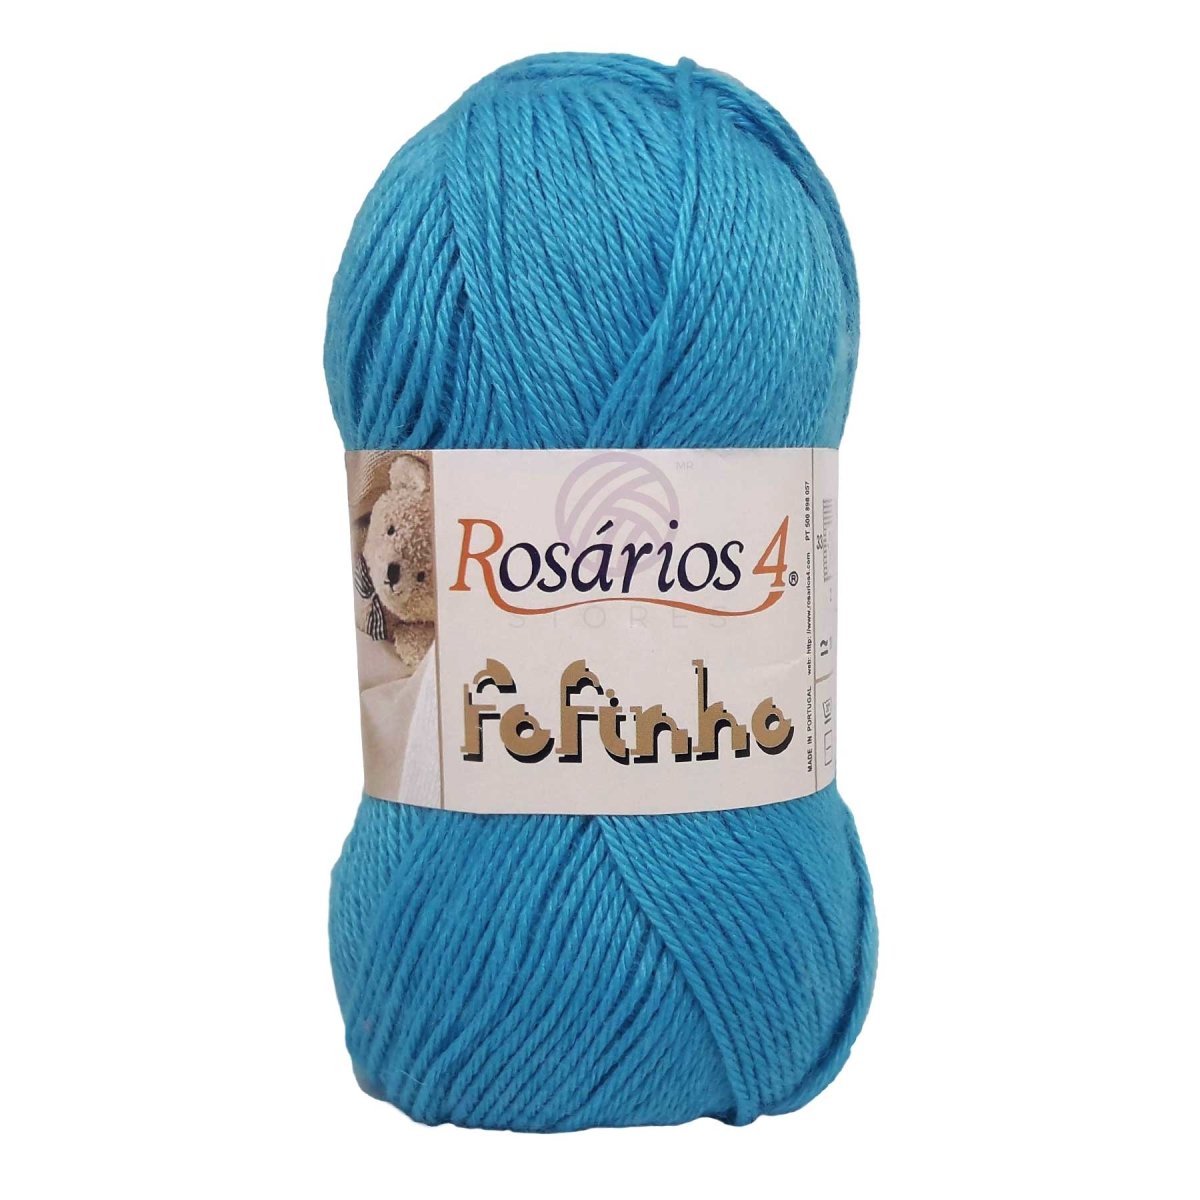 FOFINHO - Crochetstores441-105606850441106